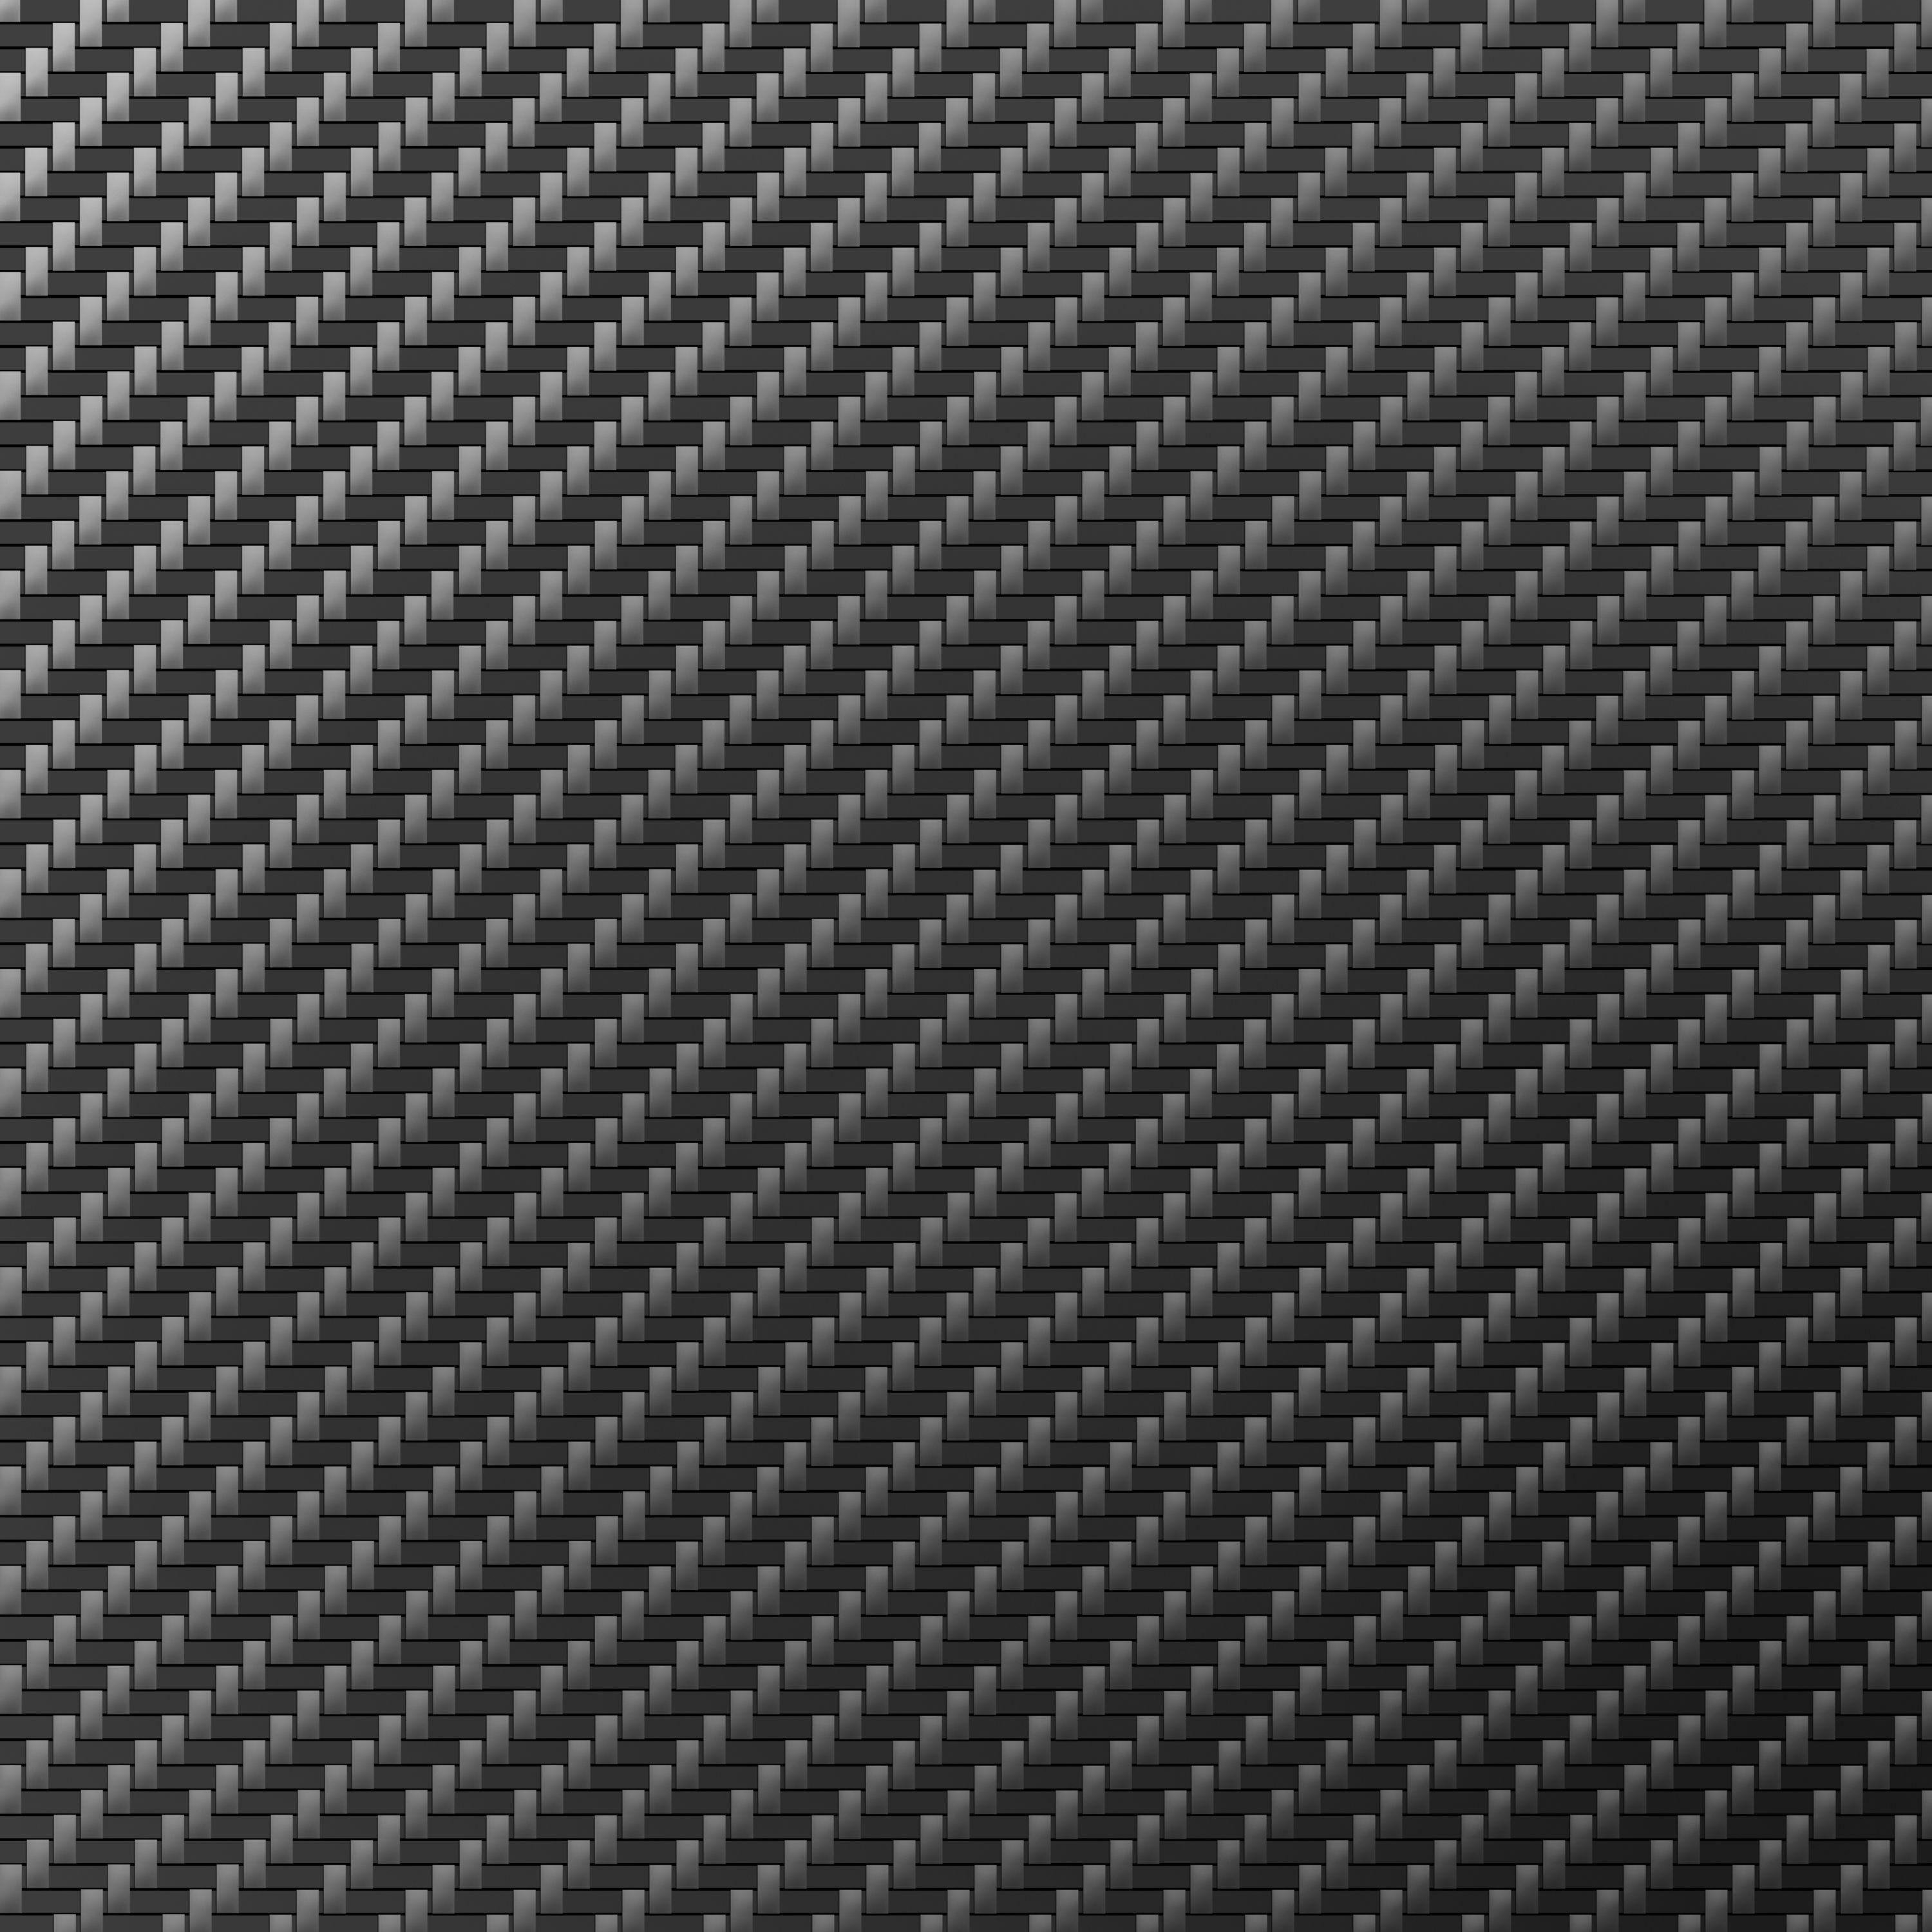 Carbon Fiber Texture Wallpapers - Top Free Carbon Fiber Texture